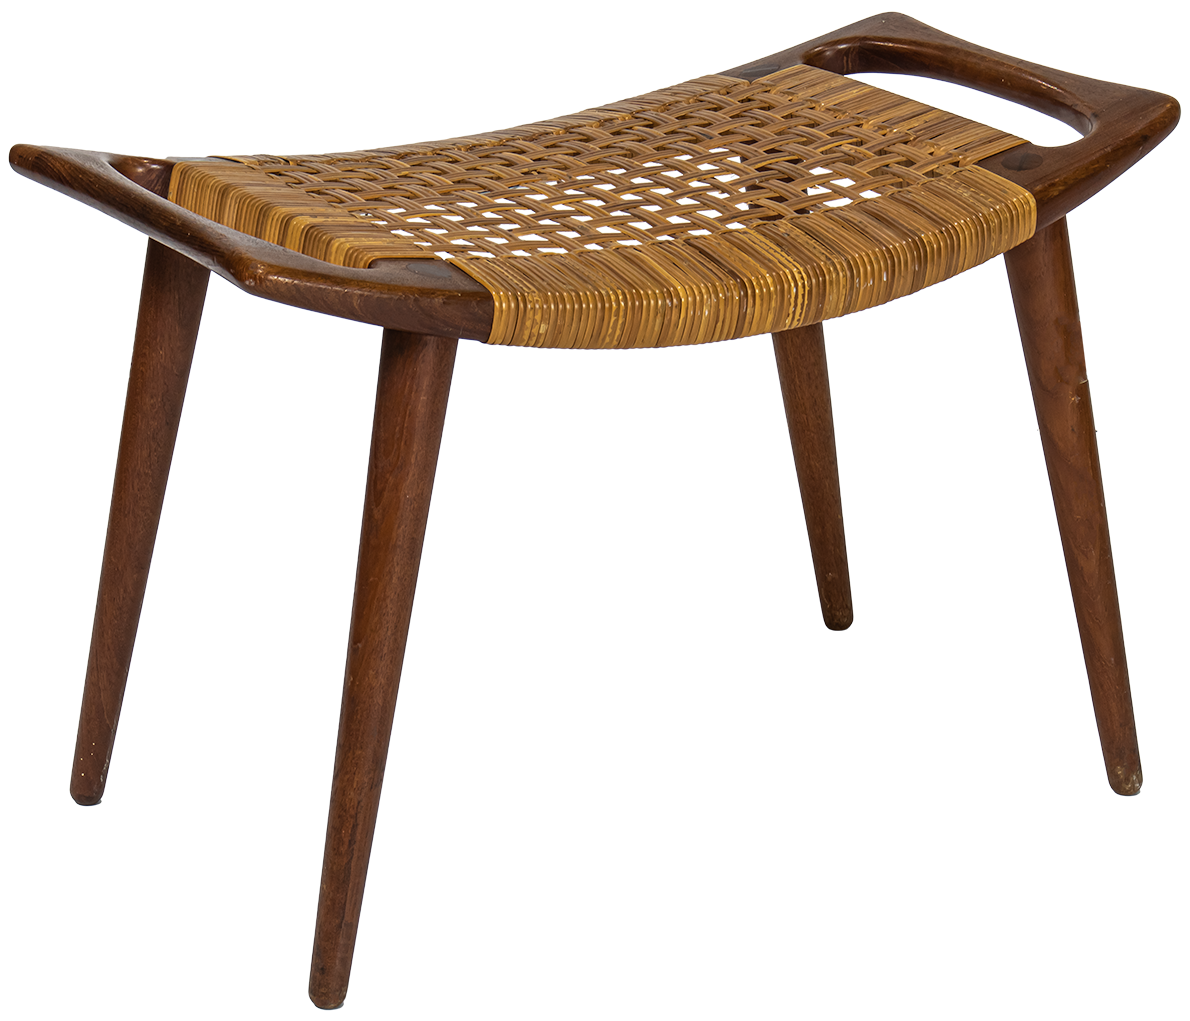 Hans Wenger stool, Model JH539.